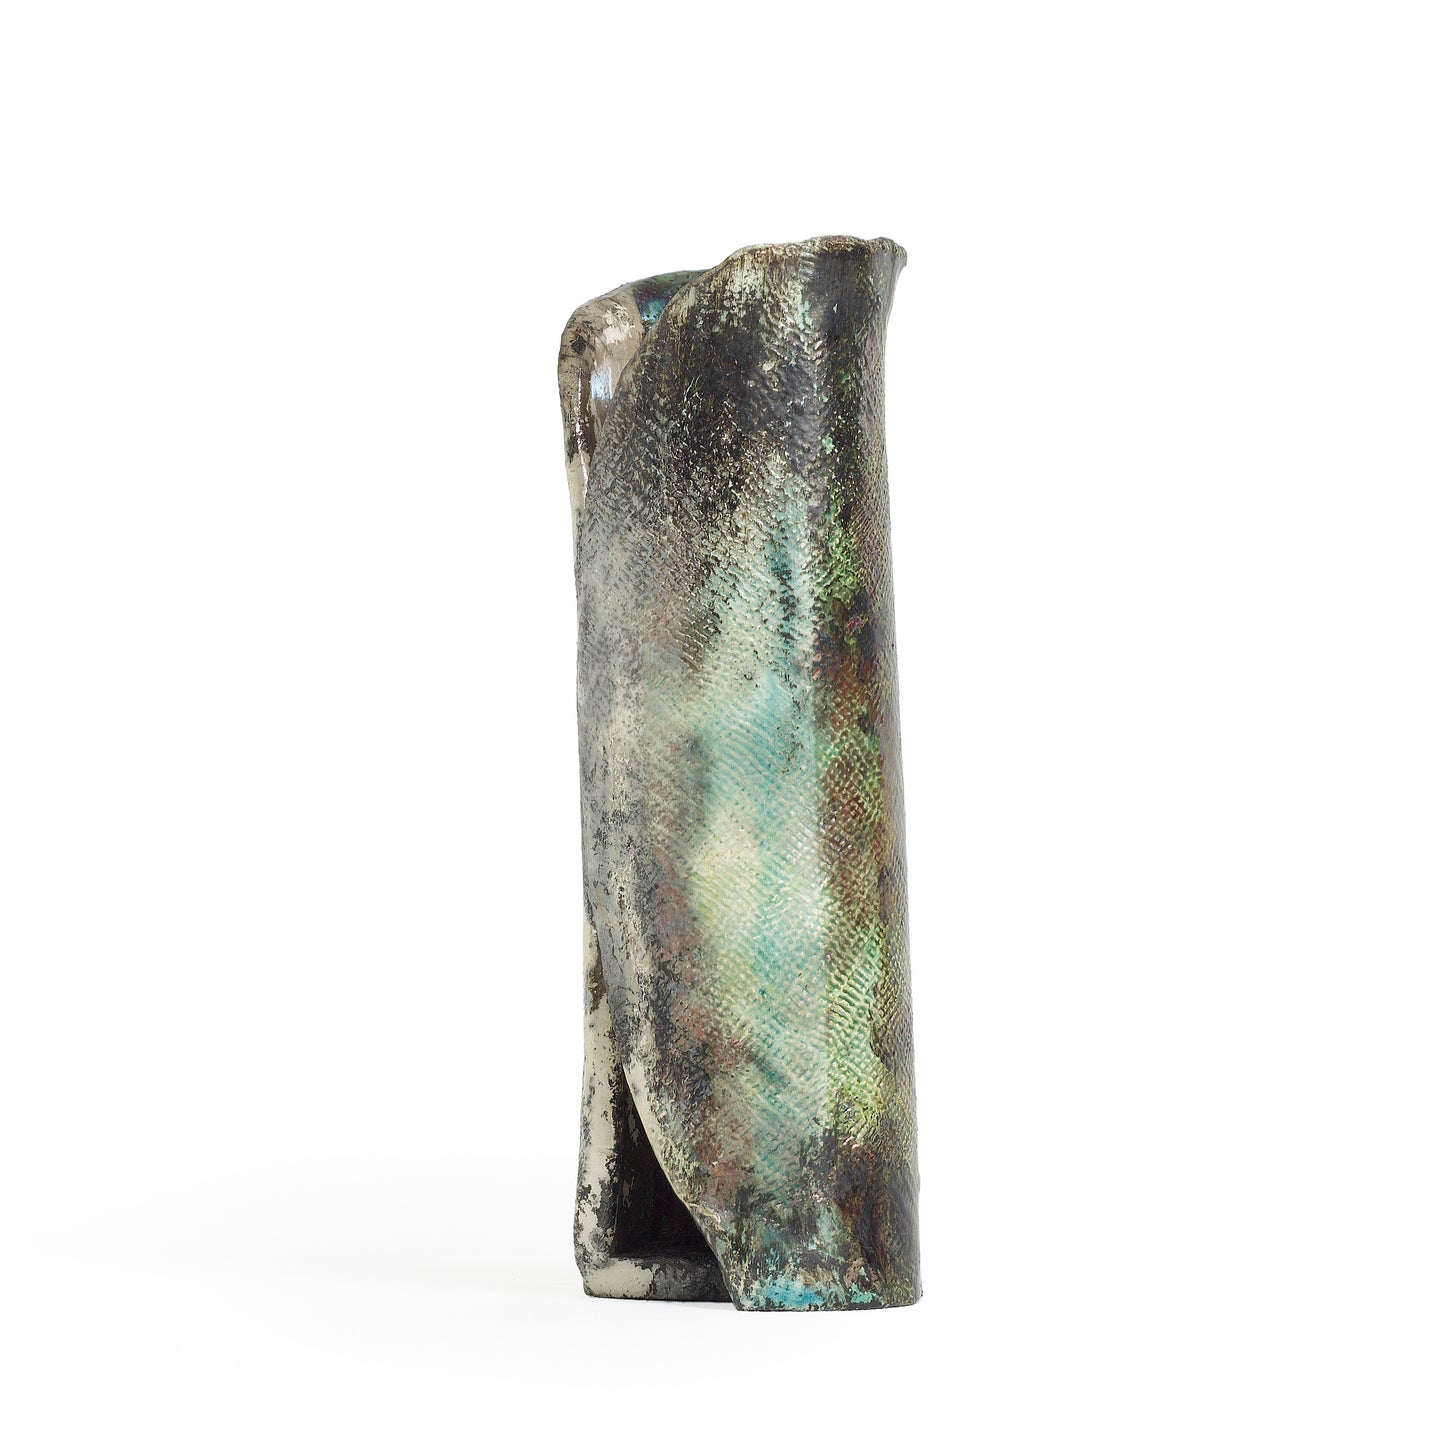 Modern Grip Vase Textured Raku Ceramic Metal Effects Black White Green Crackle